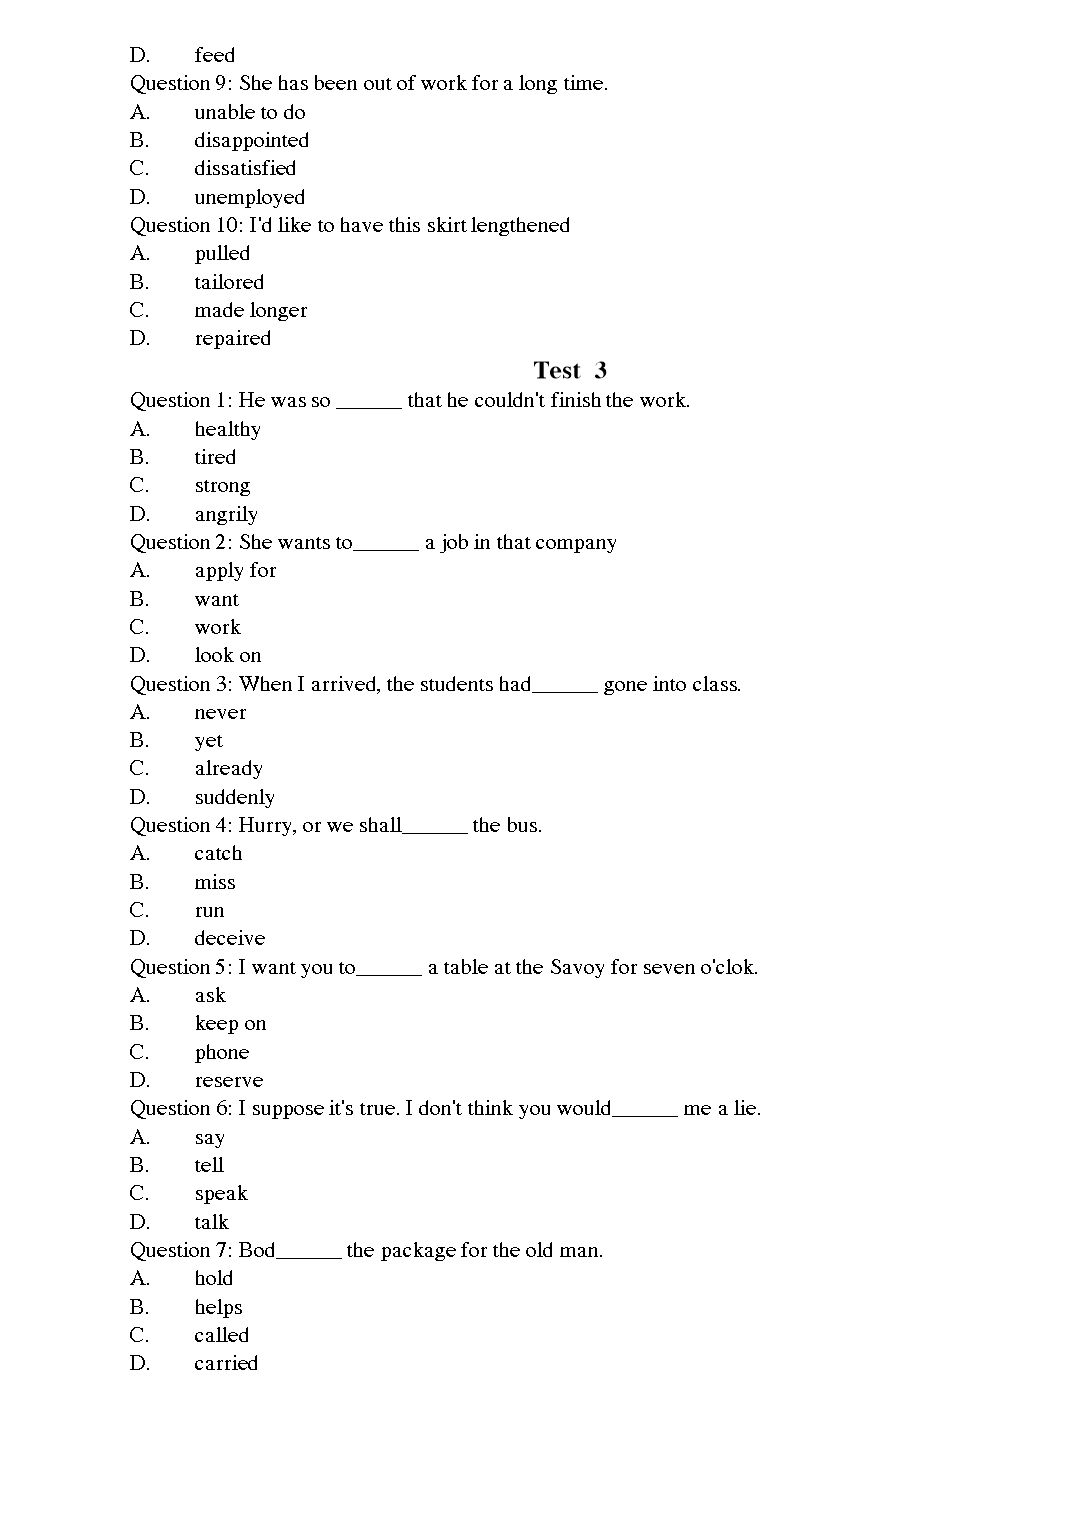 Tiếng Anh - Level A trang 3